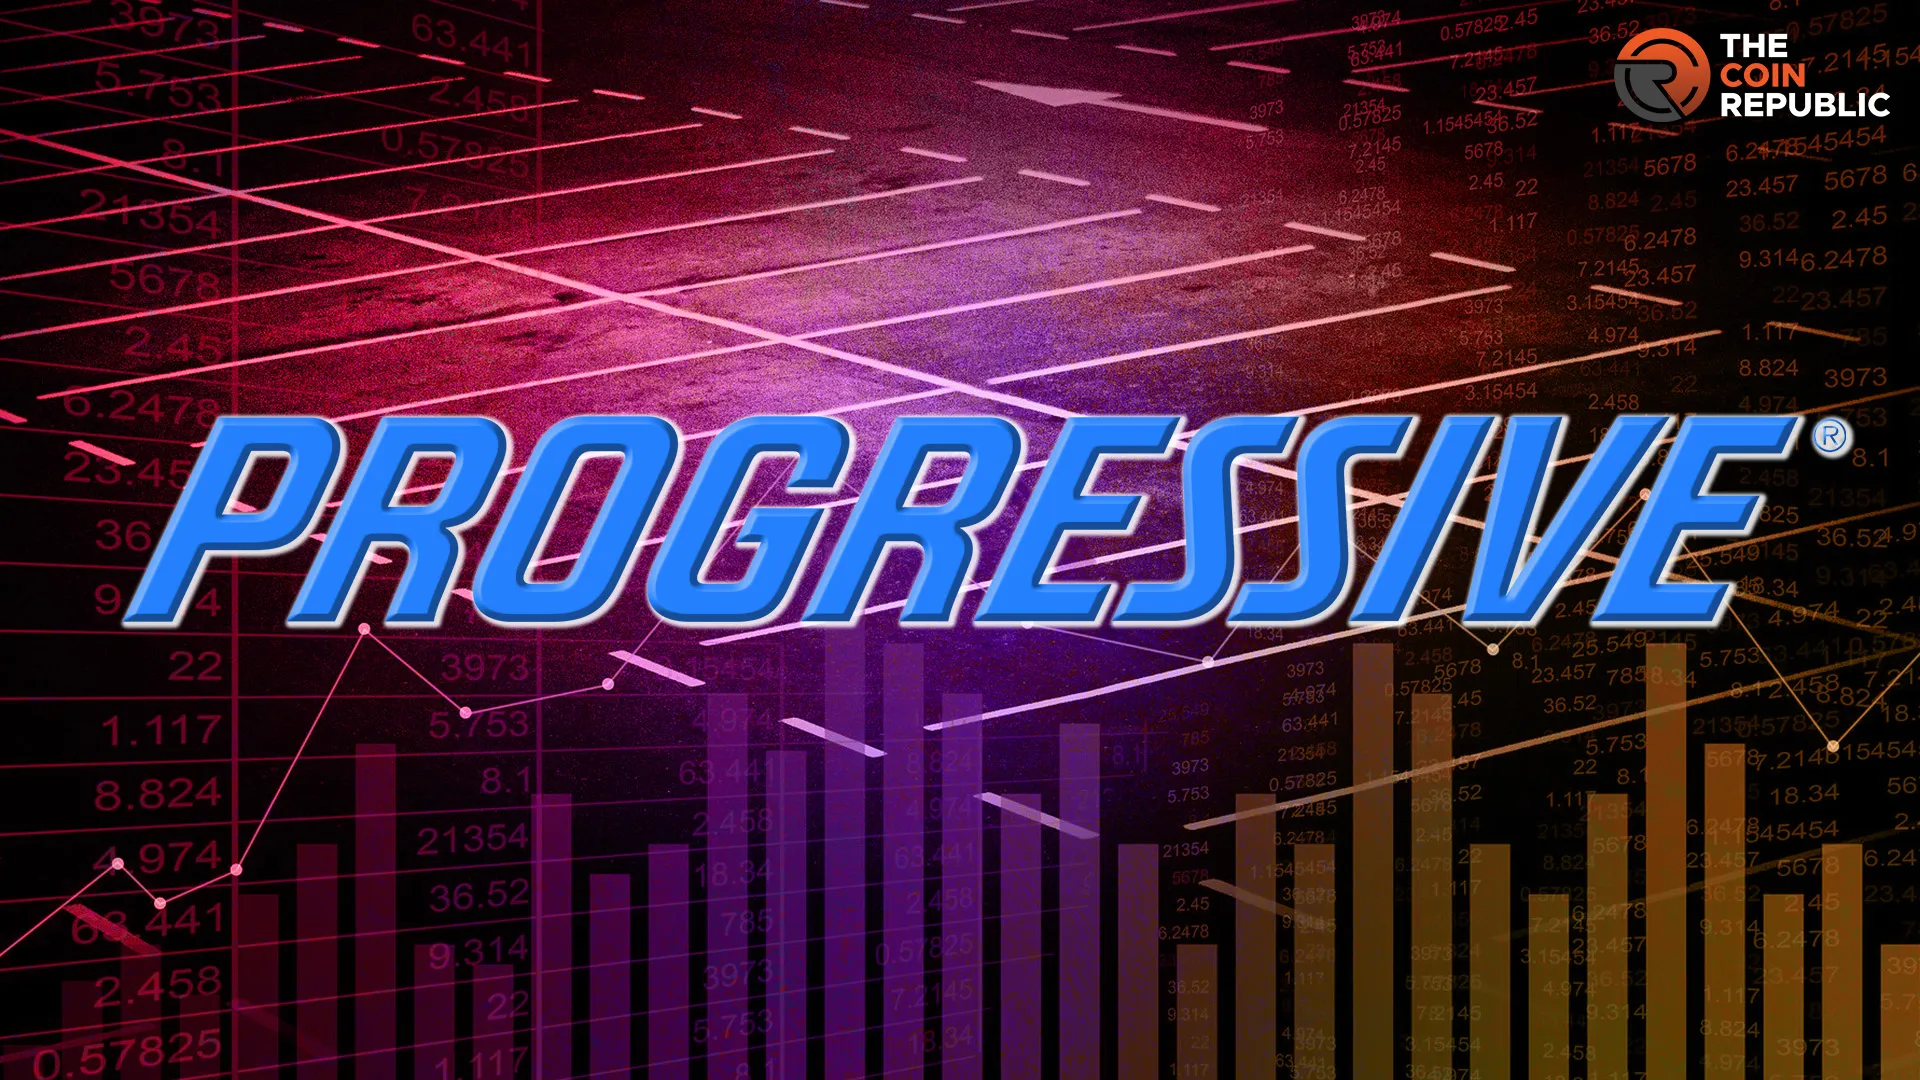 PGR Stock Price Prediction: Can Progressive Corporation Rise?